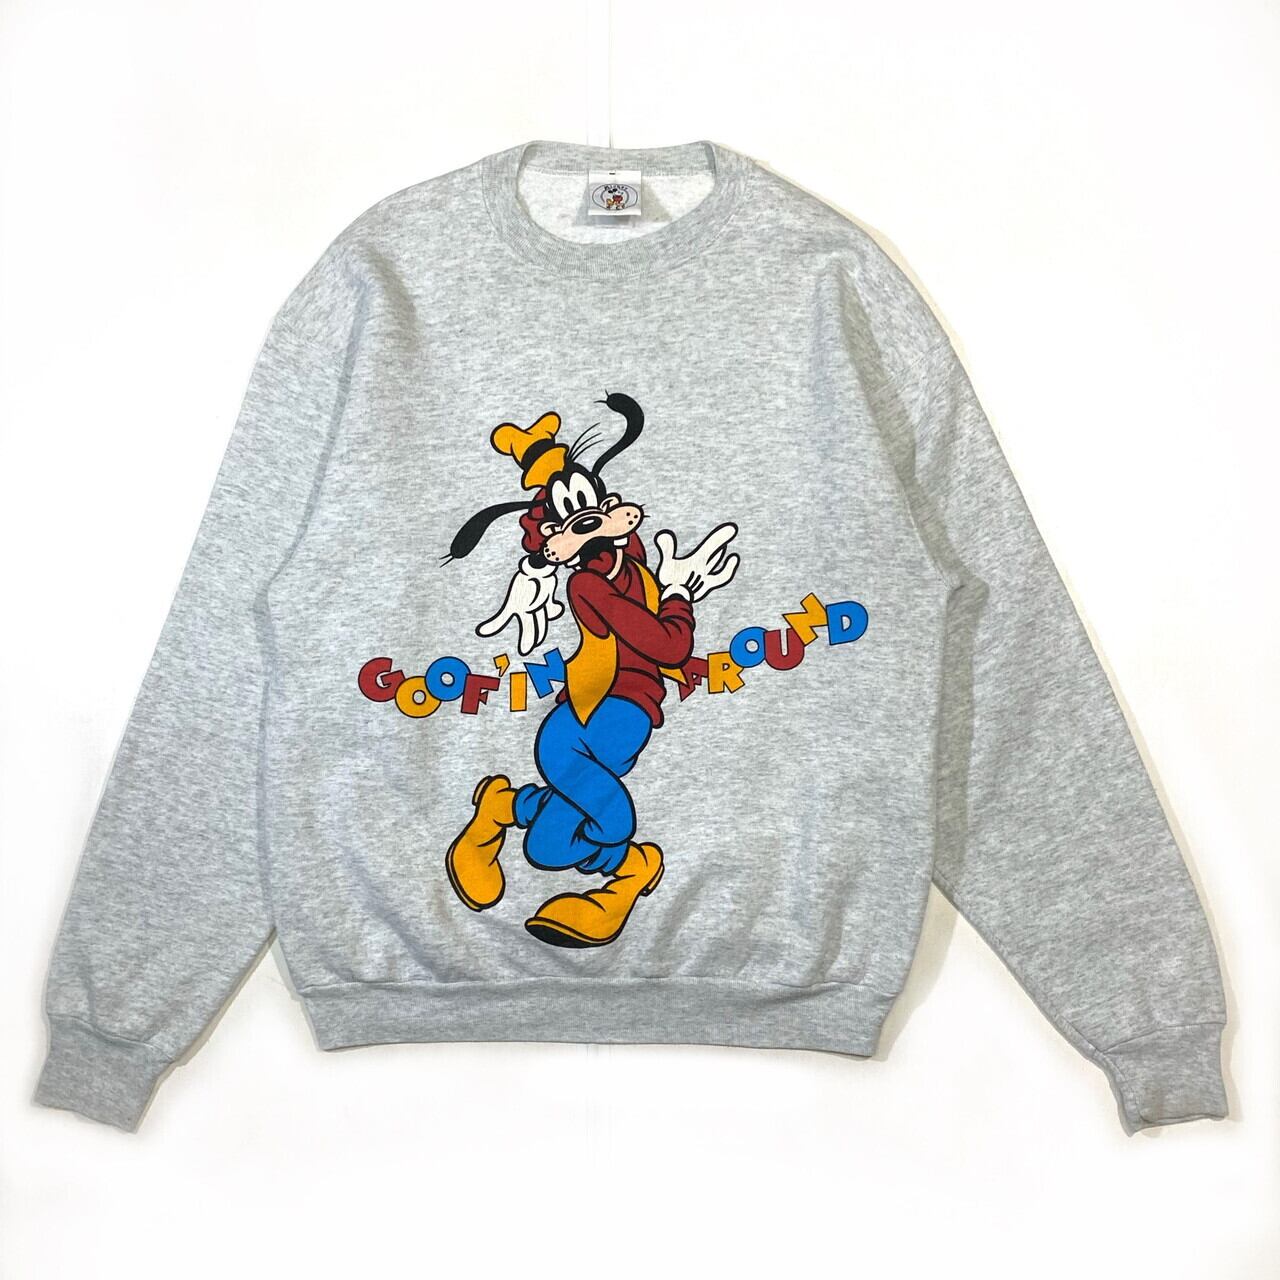 90年代 Disney MICKEY MOUSE ミッキーマウス GOOFY グーフィー キャラクタースウェットシャツ トレーナー USA製 メンズS ヴィンテージ /eaa276305